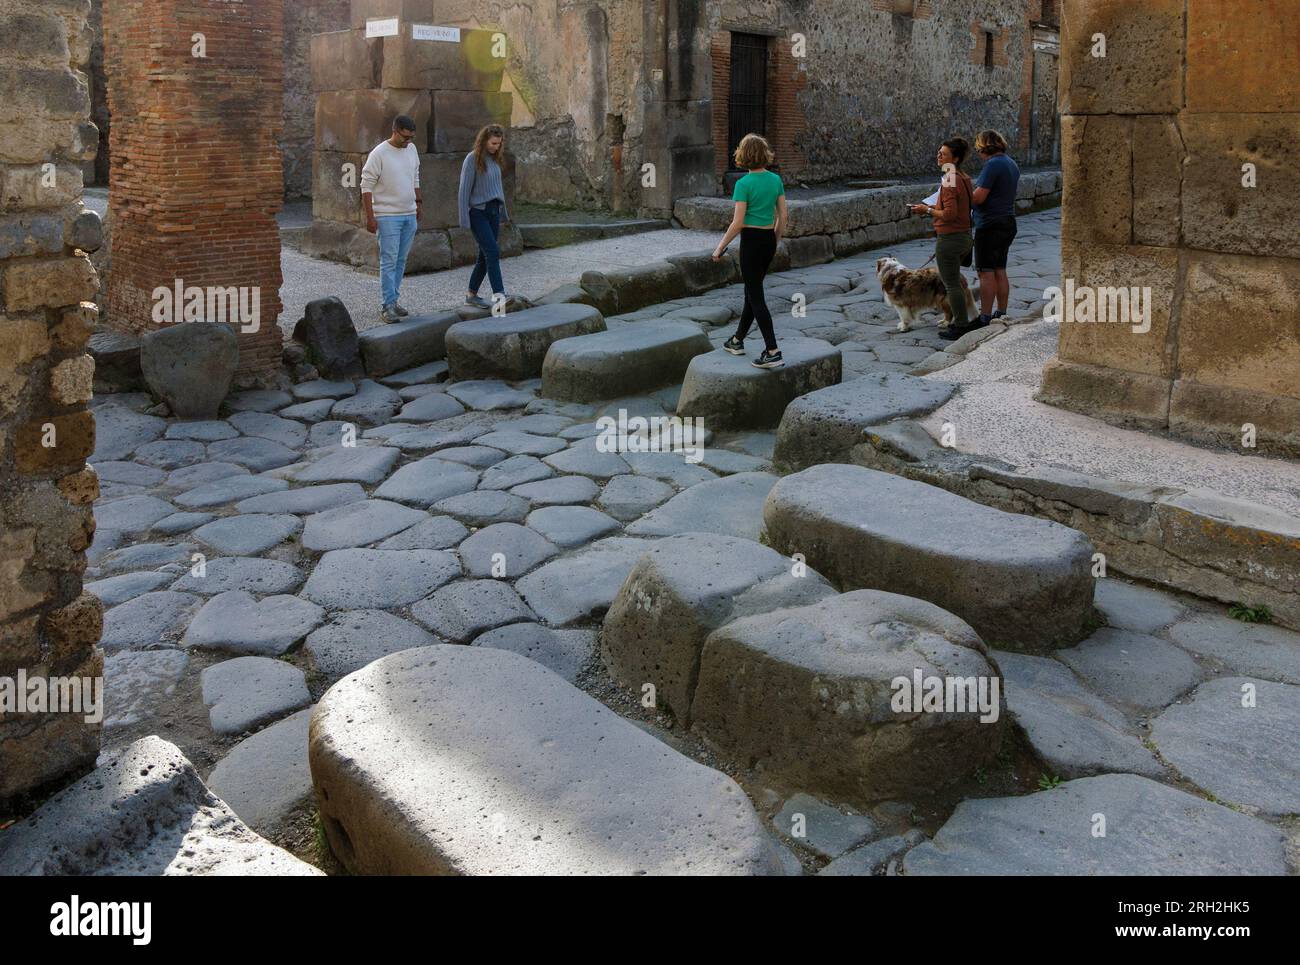 Sito archeologico di Pompei, Campania, Italia. Di fronte all'hotel. Pompei, Ercolano e Torre Annunziata sono collettivamente denominati A. Foto Stock